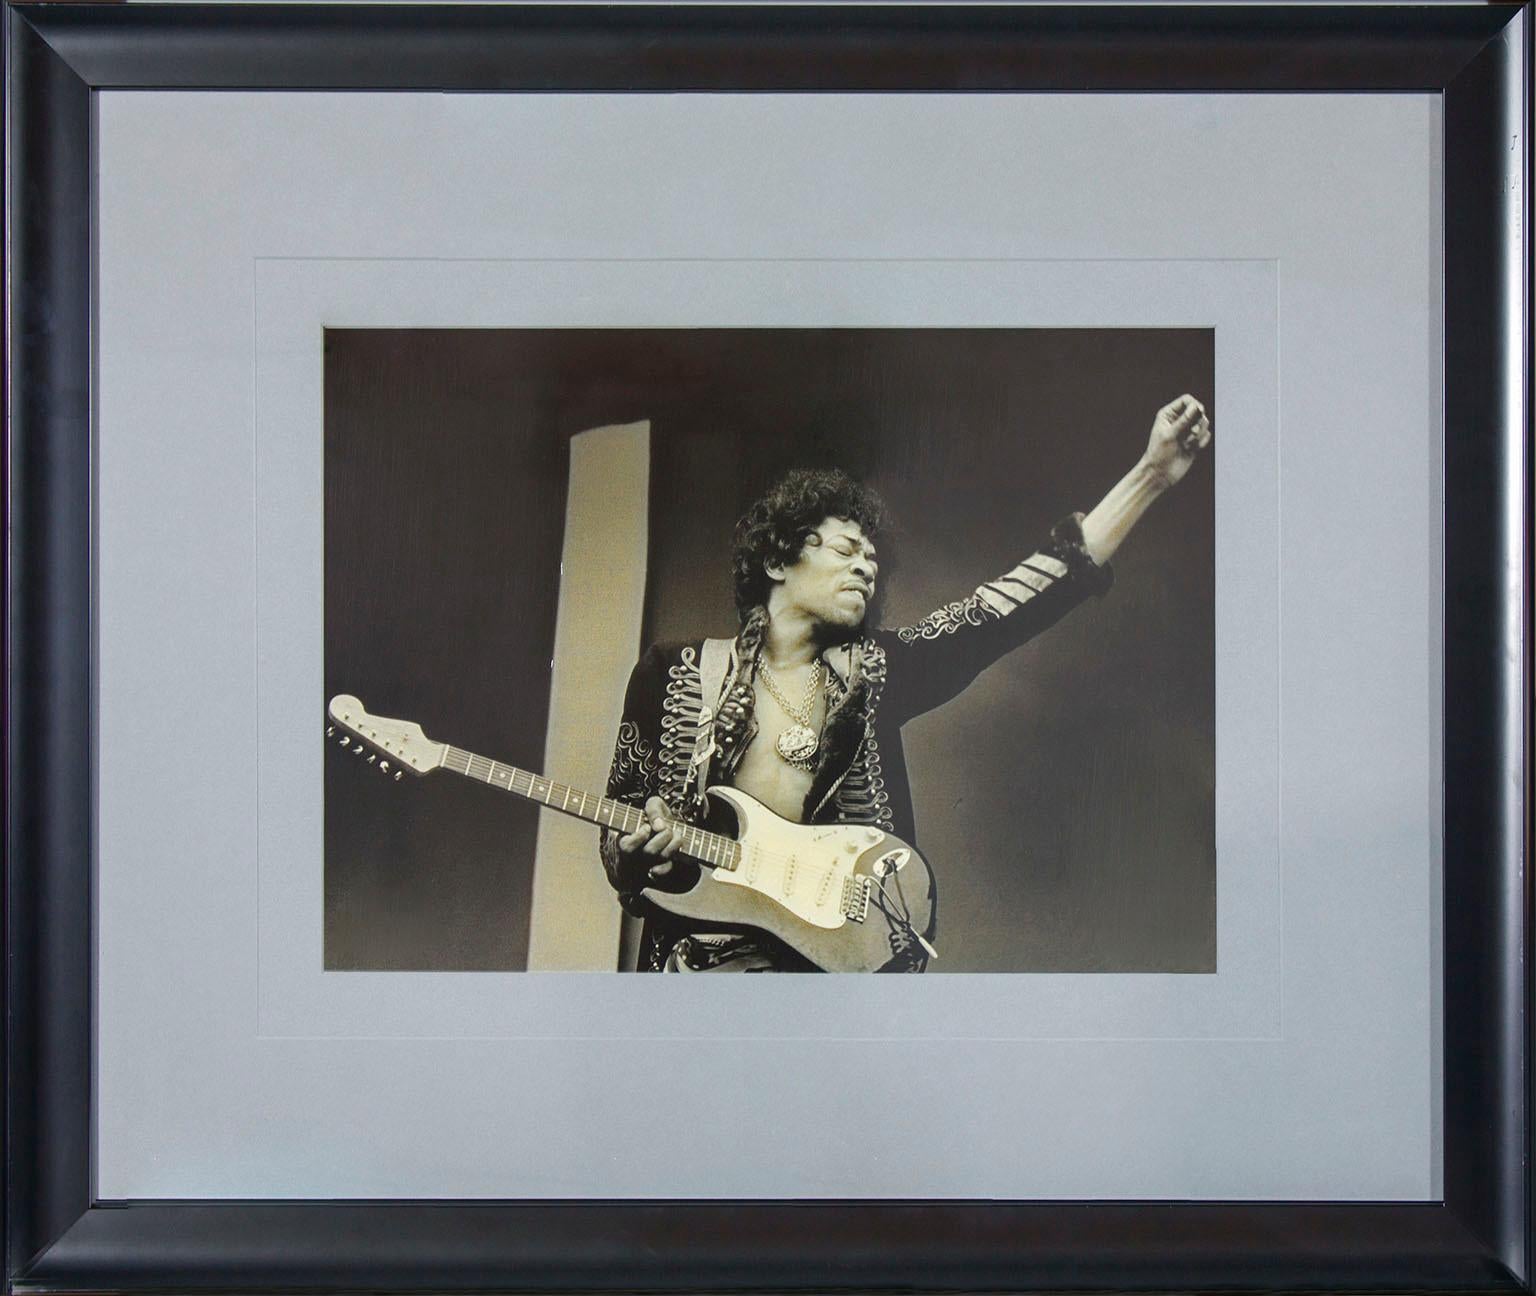 "Jimi Hendrix, Monterey Pop Festival, 1967" photographie en noir et blanc de Jim Marshall. Taille de l'image : 14 x 21 pouces. Cette photographie encadrée a été exposée dans une chambre d'hôte du Hard Rock Hotel and Casino à Las Vegas, Nevada. Elle